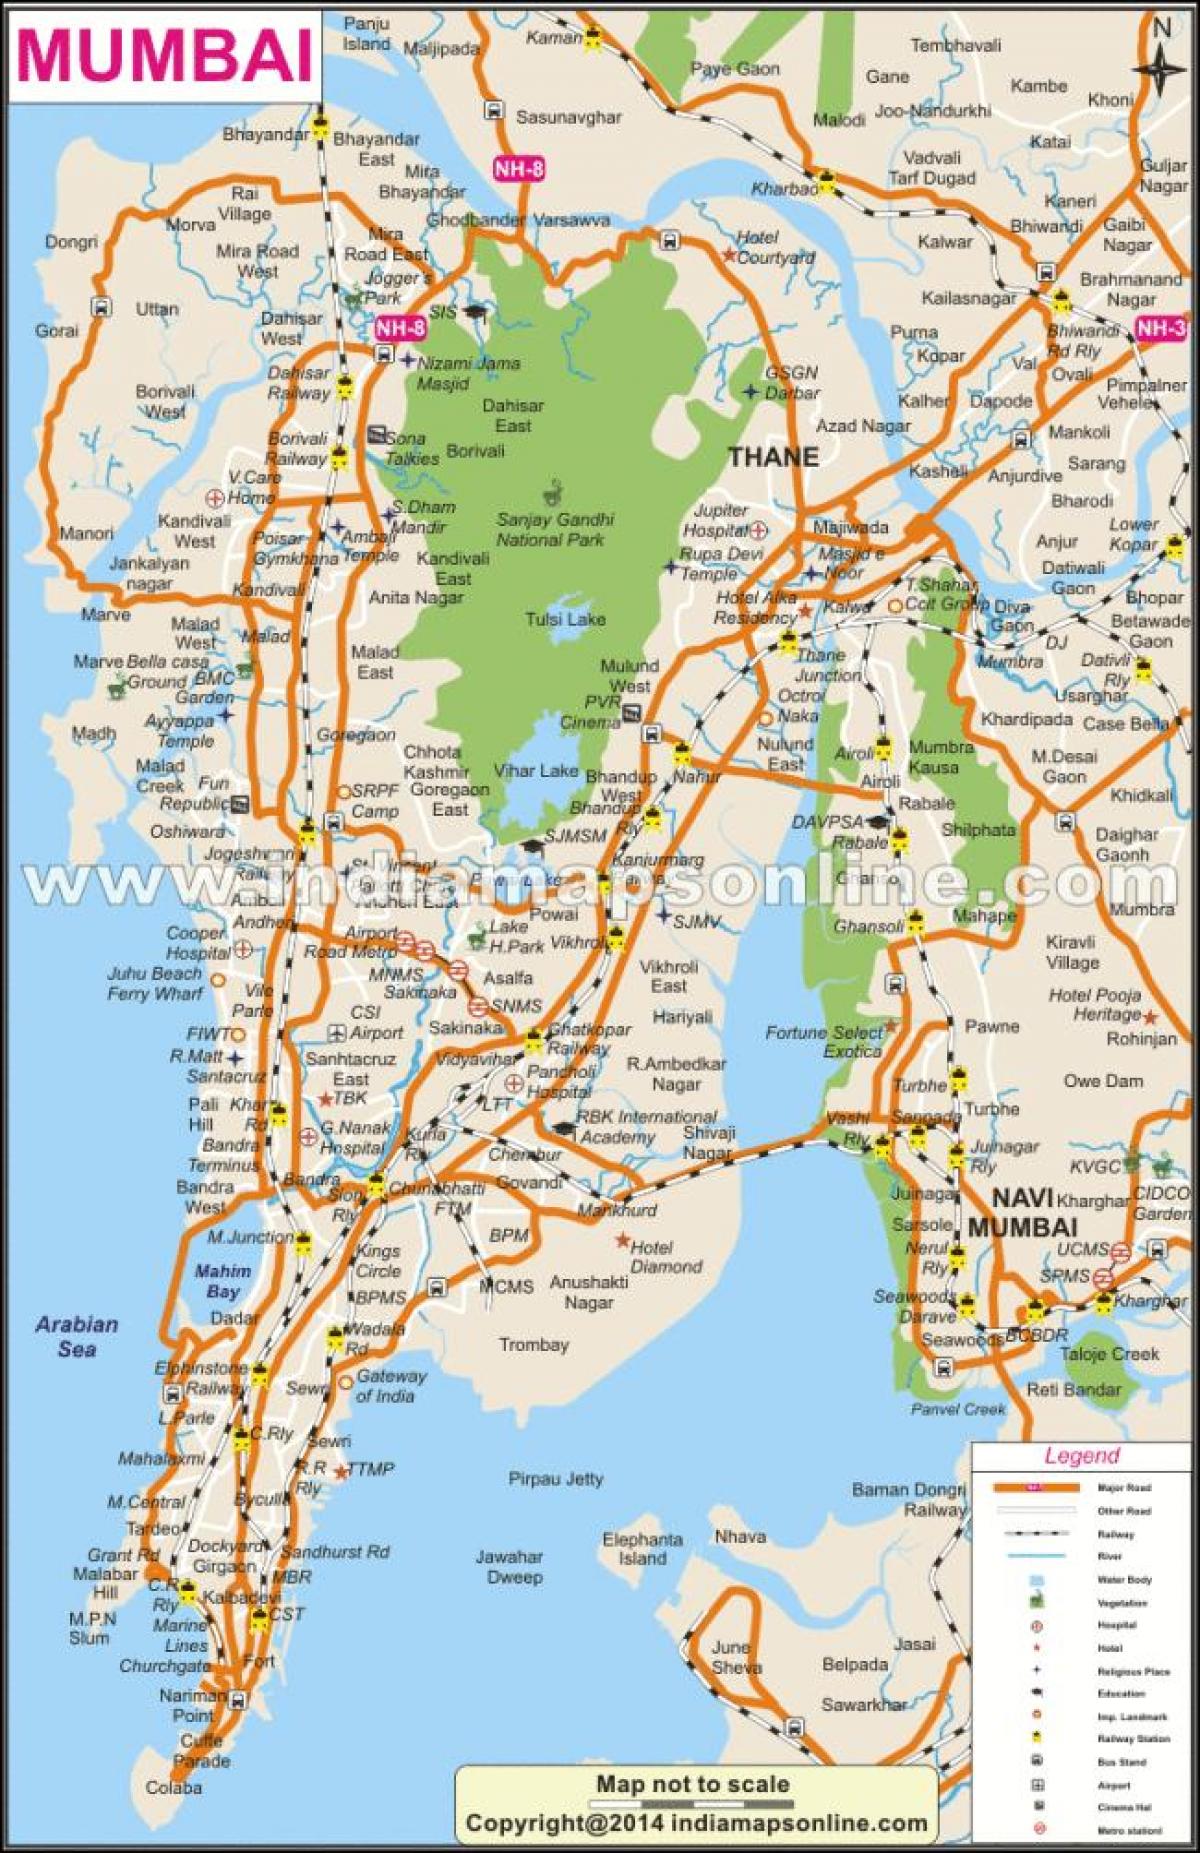 Mumbai en el mapa